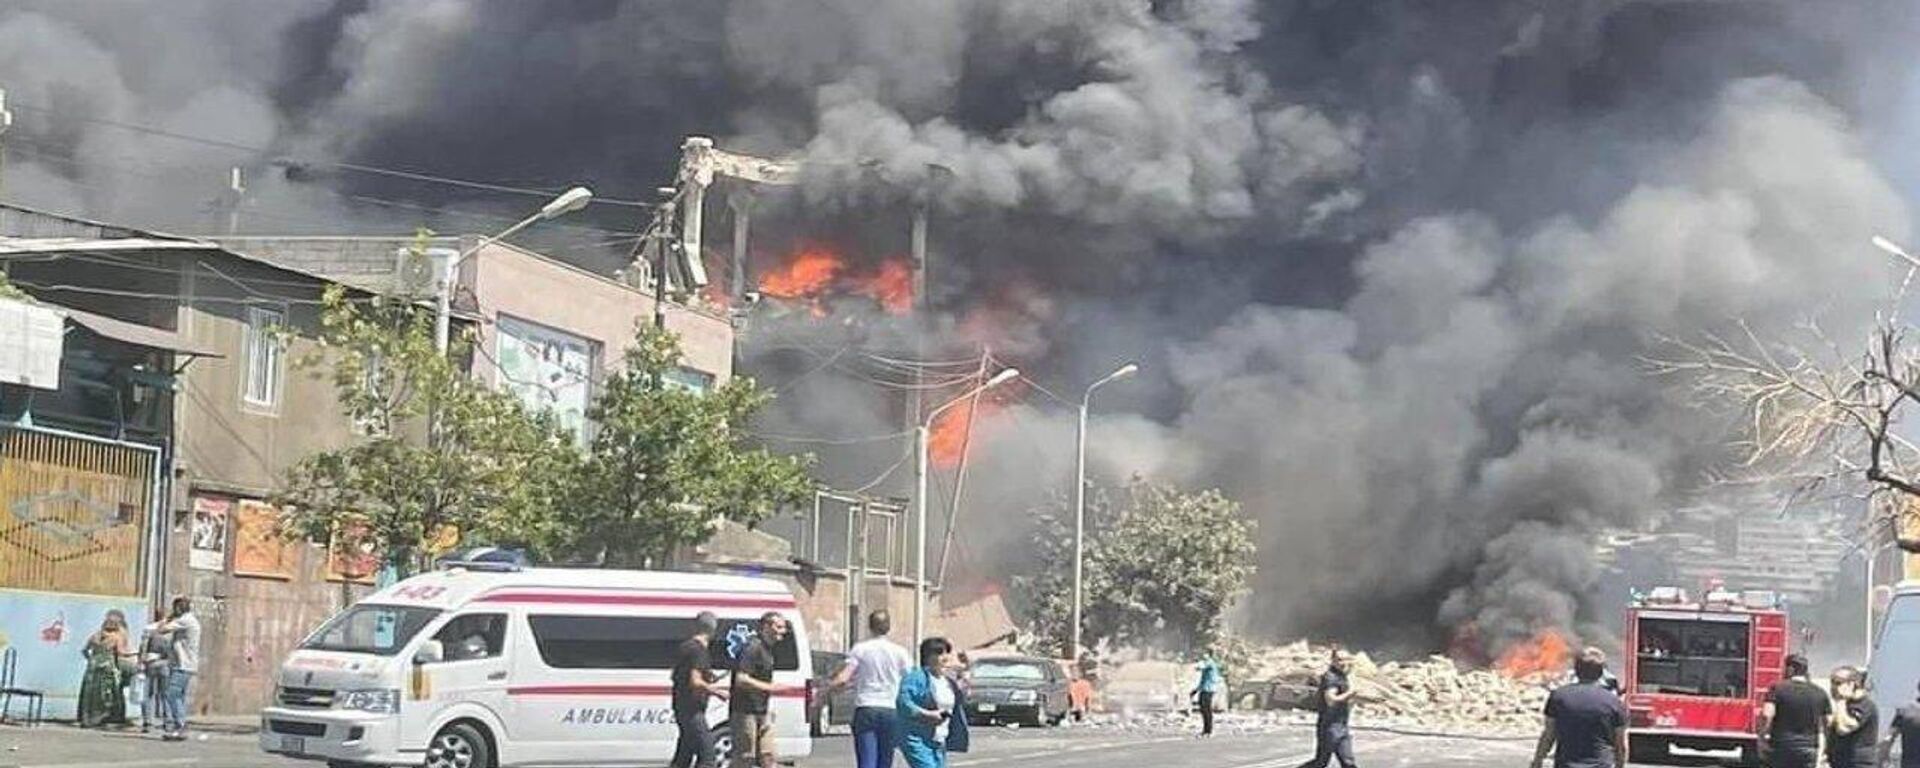 Ermenistan'ın başkenti Erivan’da pazar yerinde patlama meydana geldi. İlk belirlemelere göre 1 kişi hayatını kaybederken 20 kişi yaralandı.  - Sputnik Türkiye, 1920, 14.08.2022